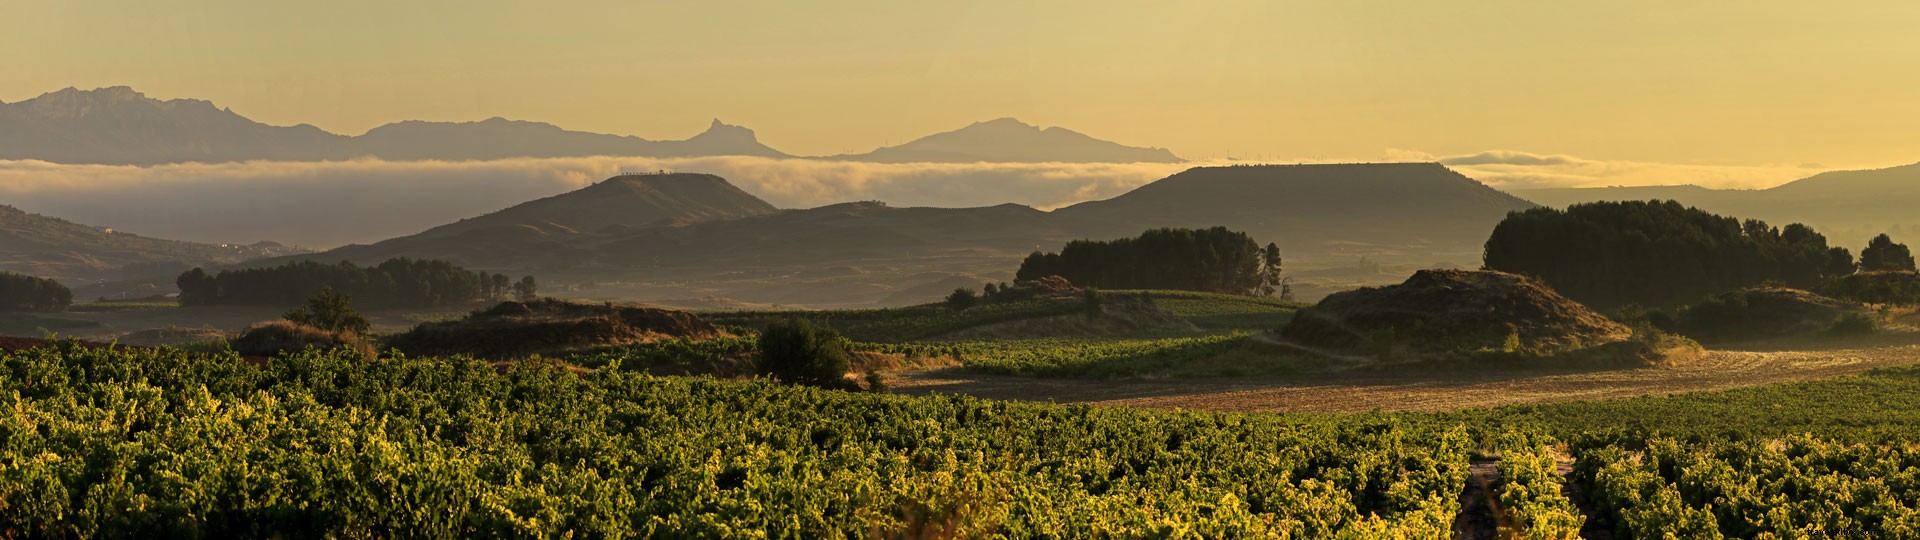 Experiencias inolvidables disfrutando del vino en La Rioja 